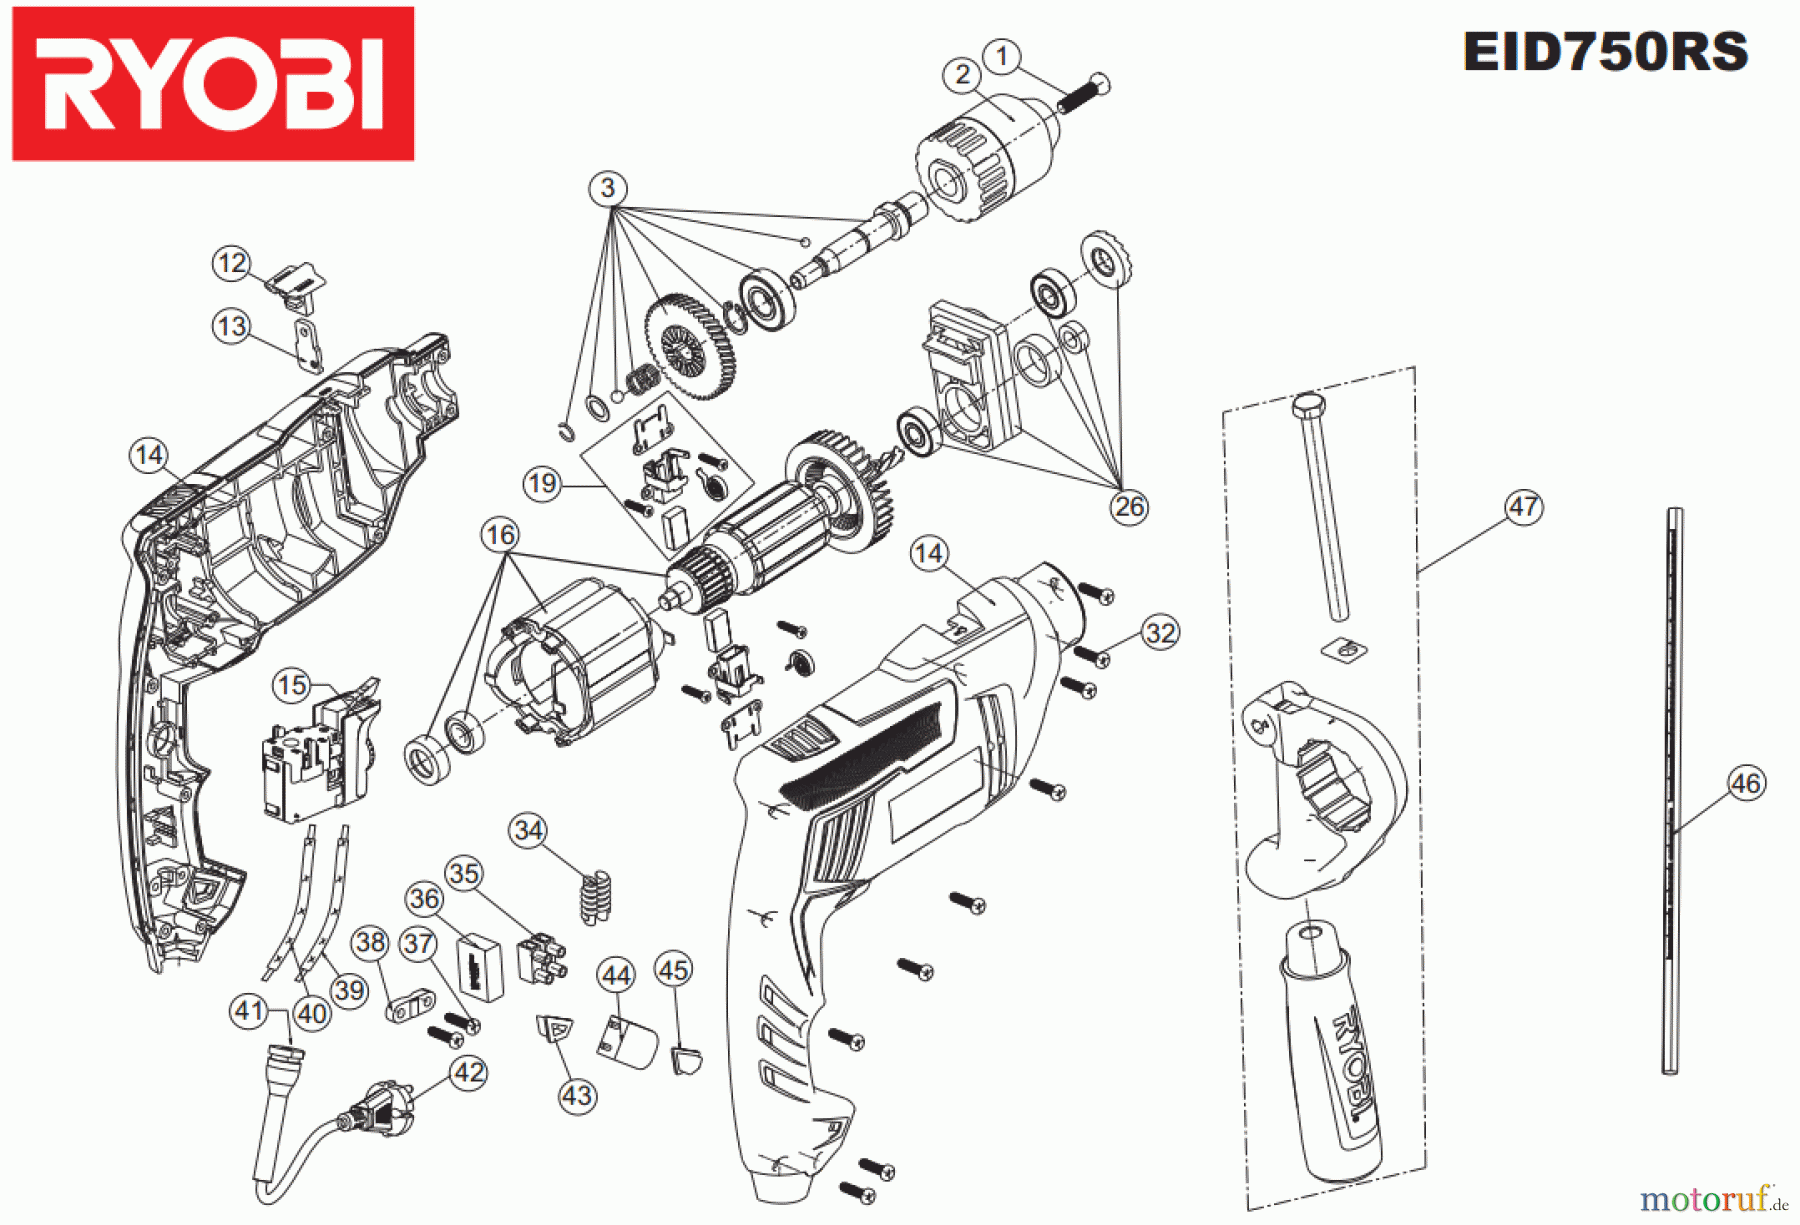  Ryobi (Schlag-)Bohrschrauber Bohrschrauber mit Schlagbohrfunktion EID750RS Seite 1